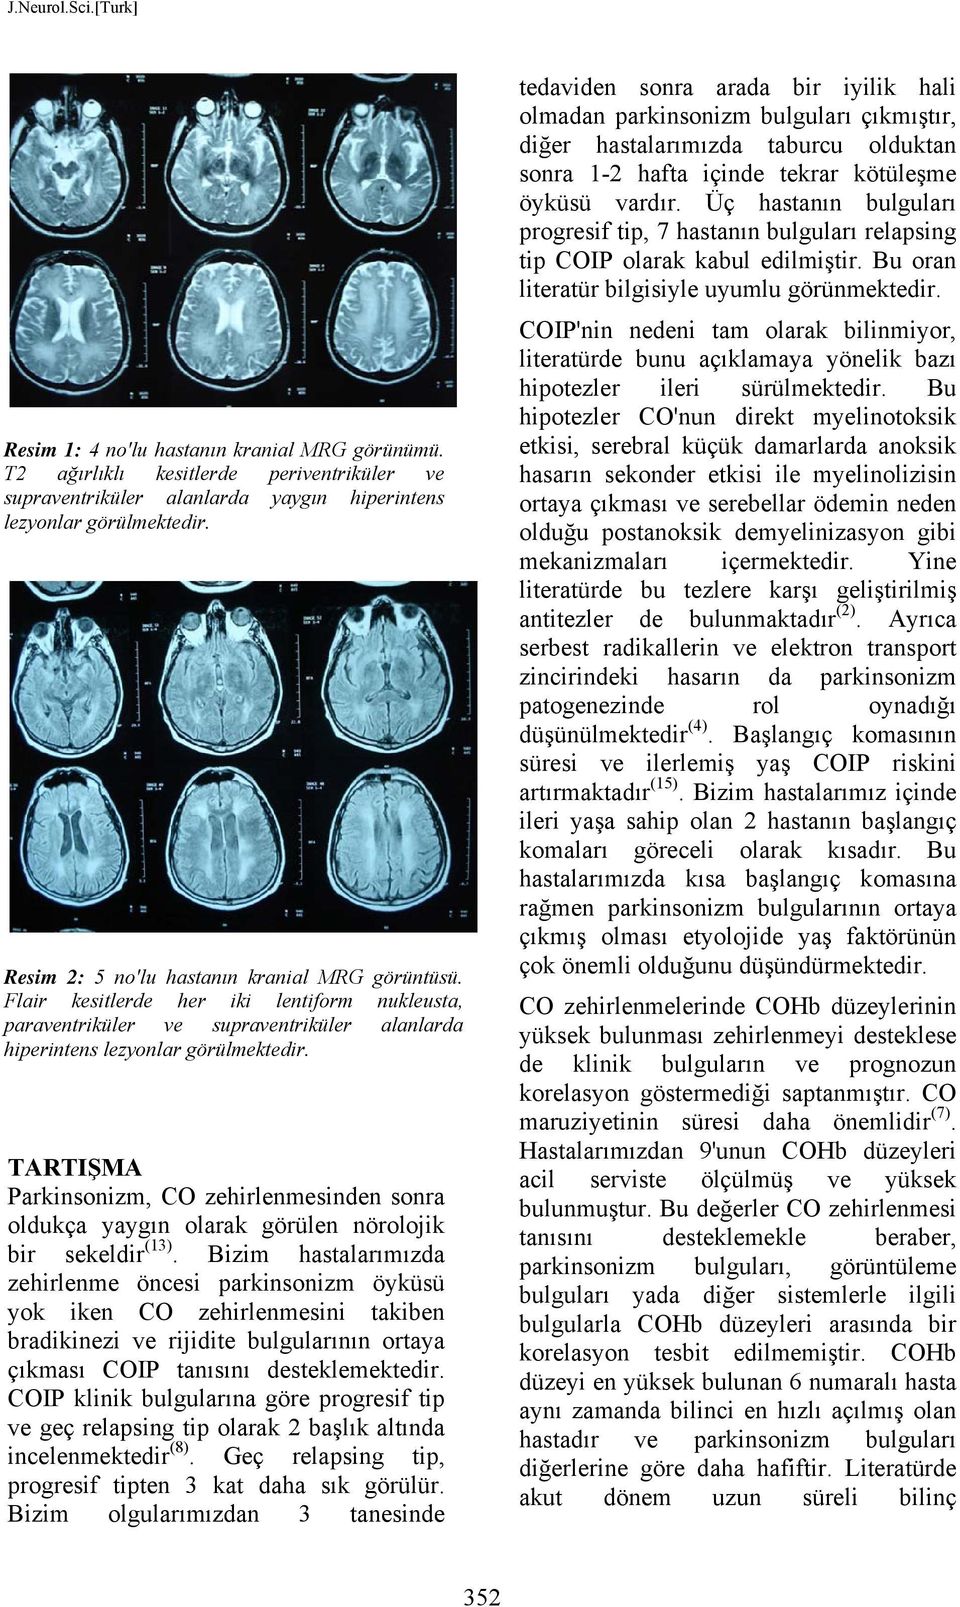 TARTIŞMA Parkinsonizm, CO zehirlenmesinden sonra oldukça yaygın olarak görülen nörolojik bir sekeldir (13).